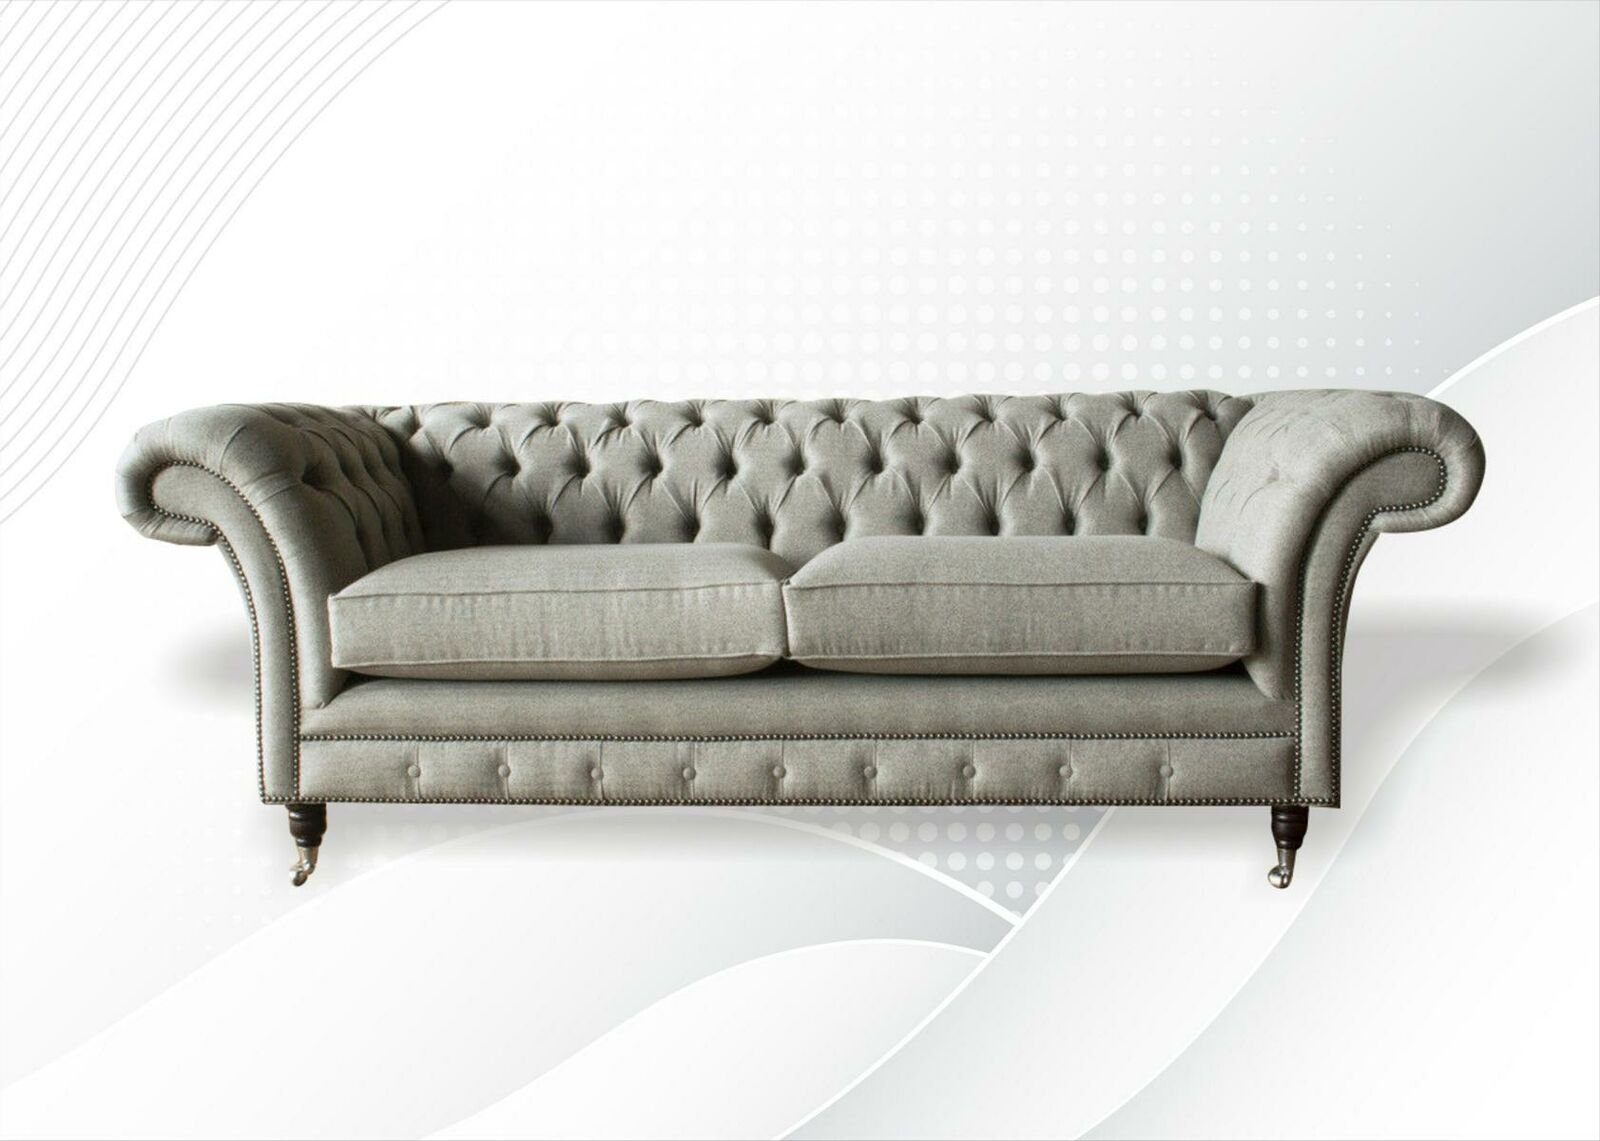 Öffnung JVmoebel Chesterfield-Sofa, Chesterfield Beige Polster Textil Stoff Wohnzimmer Neu Sofas Design Sofa Couchen